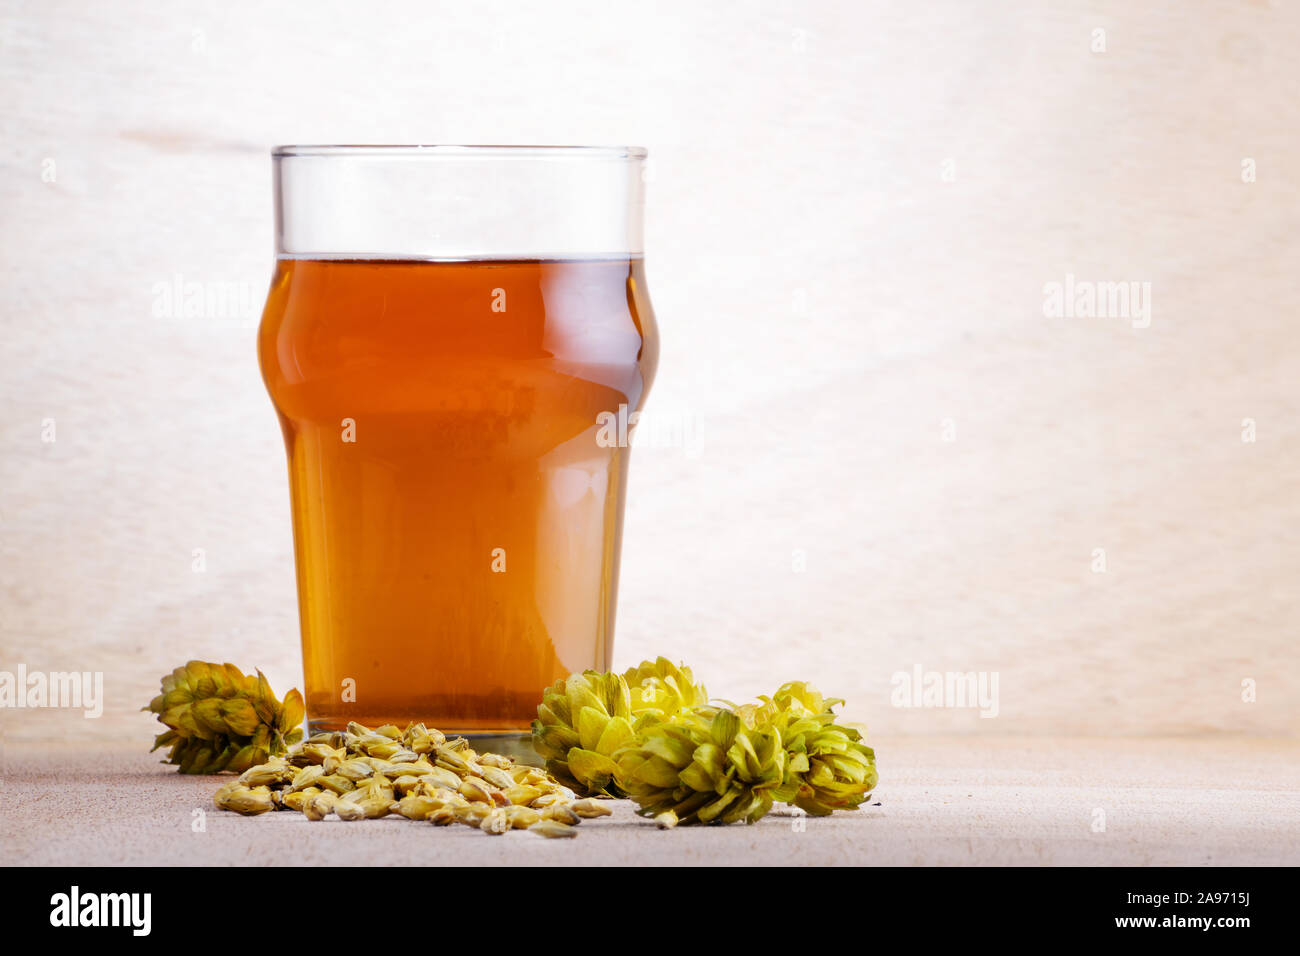 Bier in ein Glas mit Gerste und Hopfen auf hellen Hintergrund. Handwerk Bier, Brauereien und Alkohol trinken Konzepte. Stockfoto